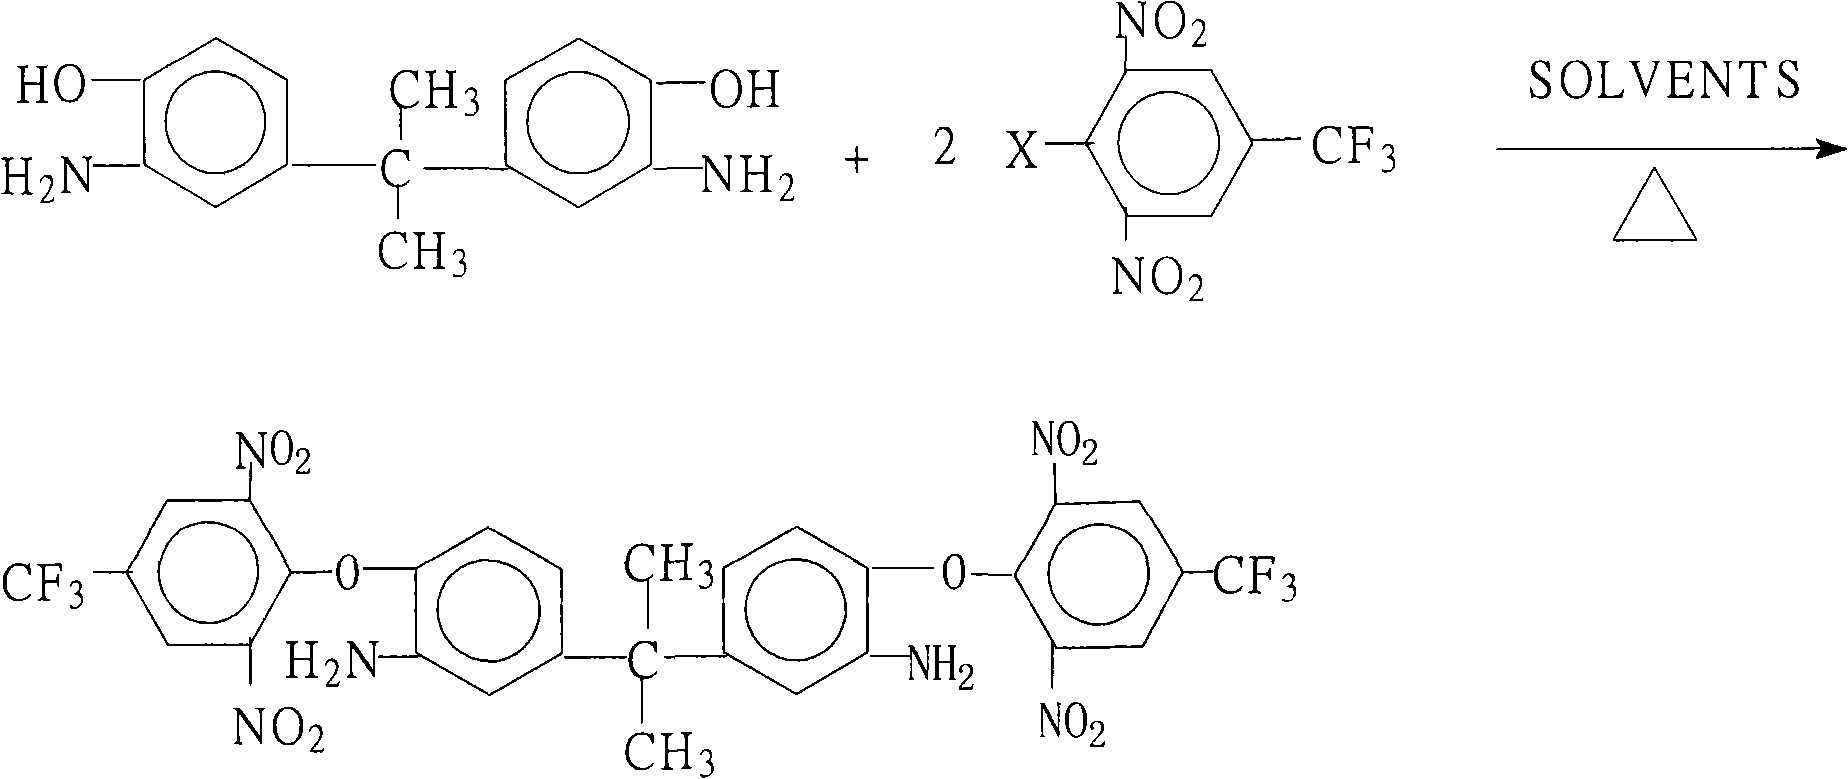 Method for preparing 2,2-bi[3-amino-4-(2,6-dinitryl-4-trifluoromethyl phenoxy phenyl] propane